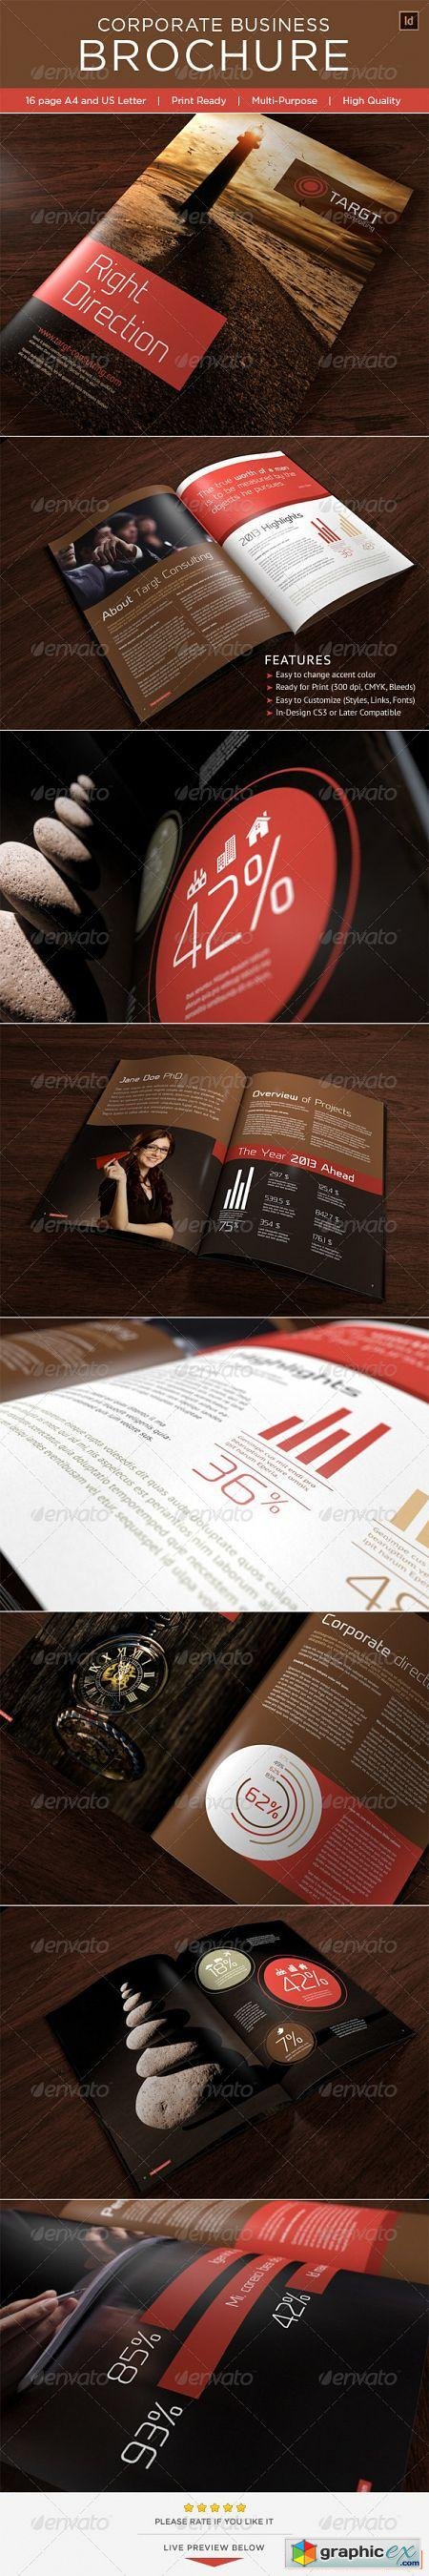 Corporate Business Brochure 3551142